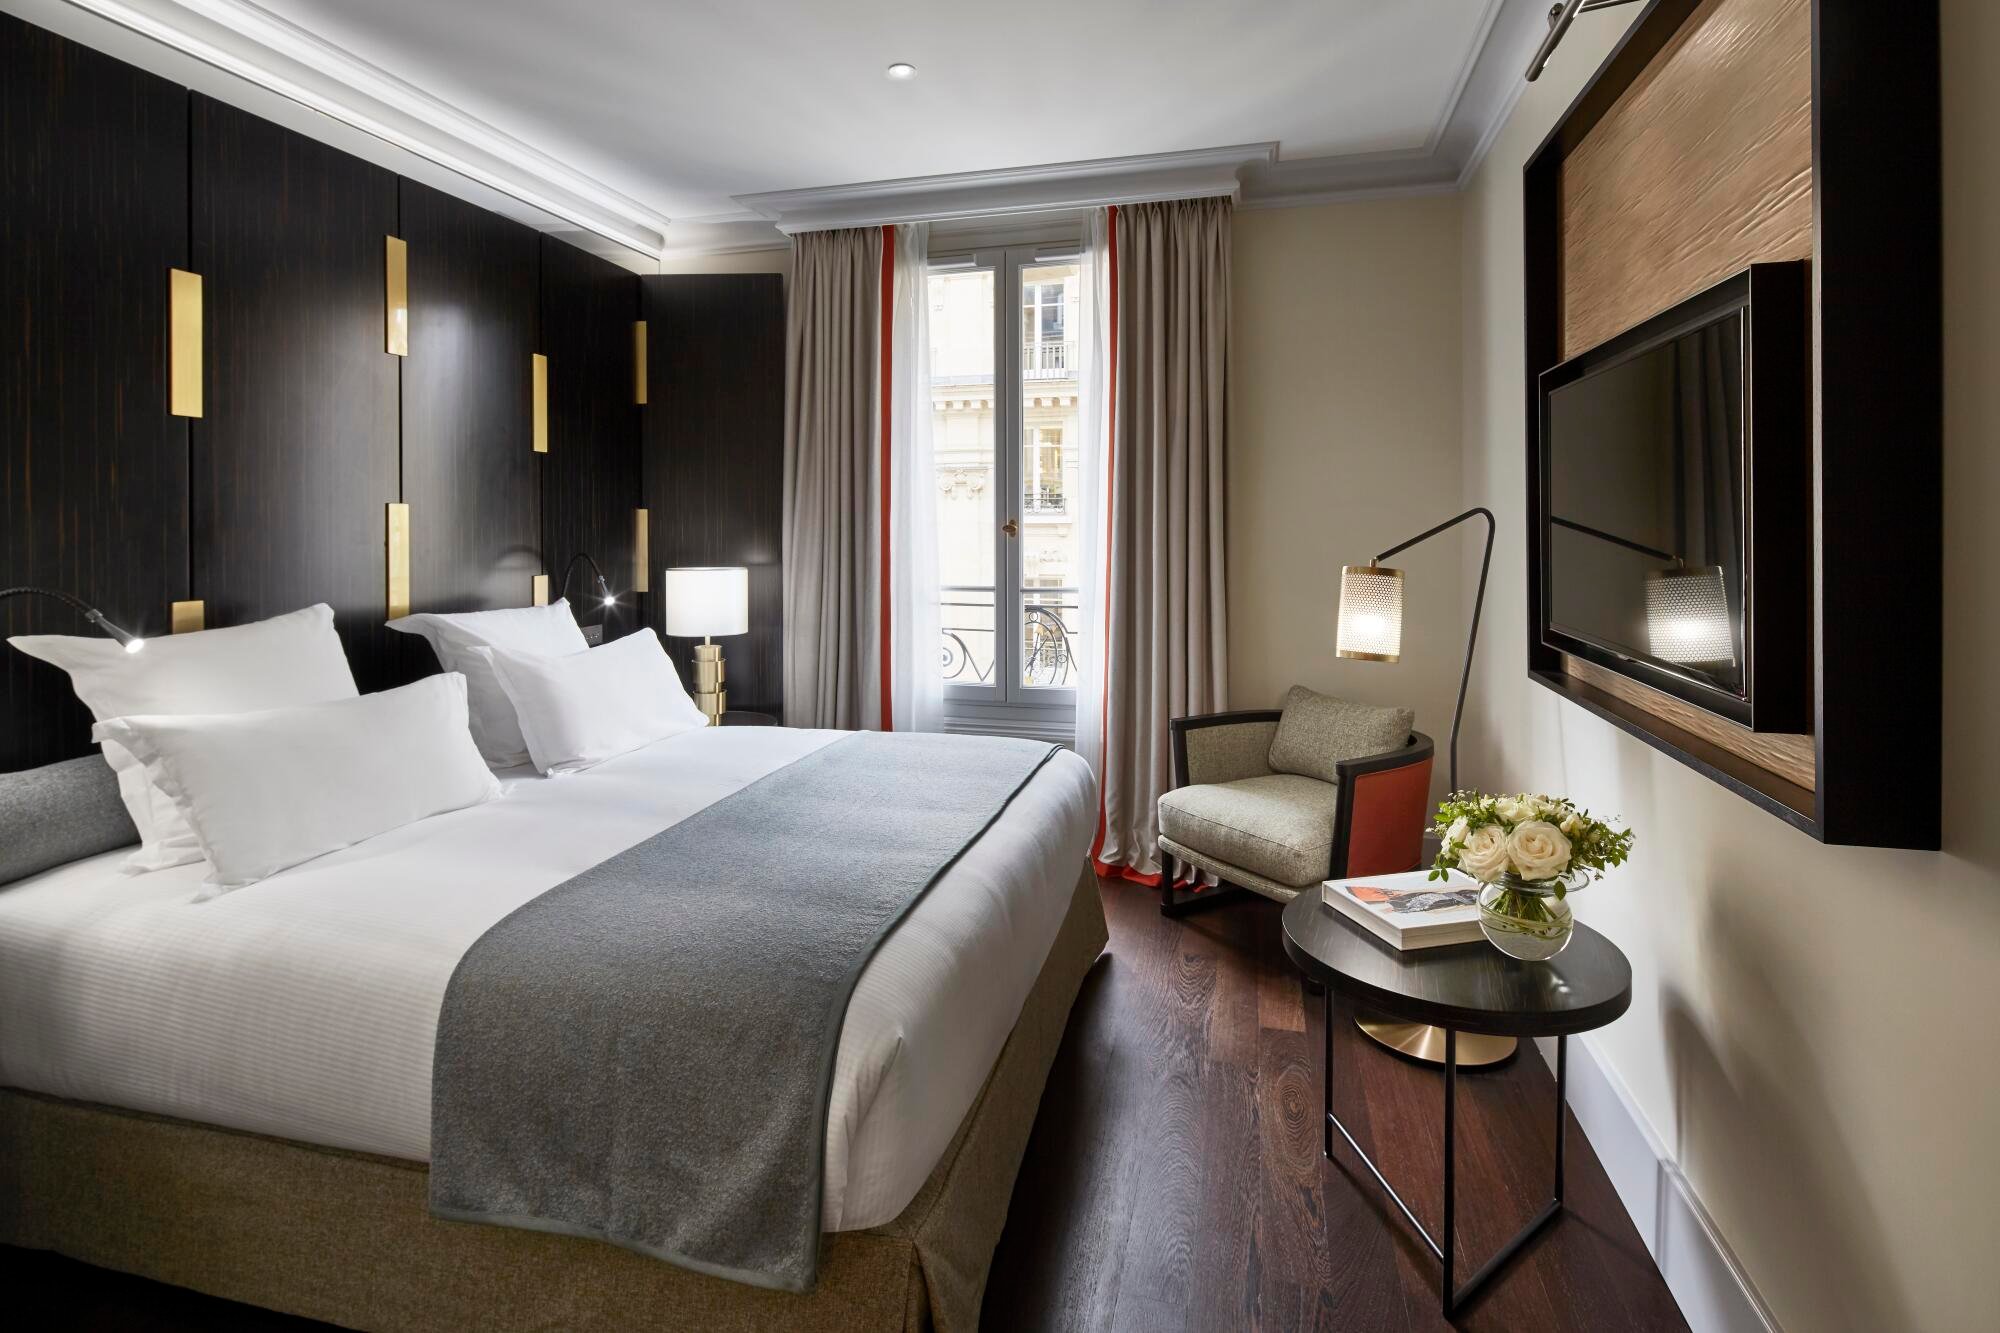 Hotel detail. Спальня в отеле 5 звезд. Отель в Париже 5 звезд. Отель 5 звезд Париж номера.